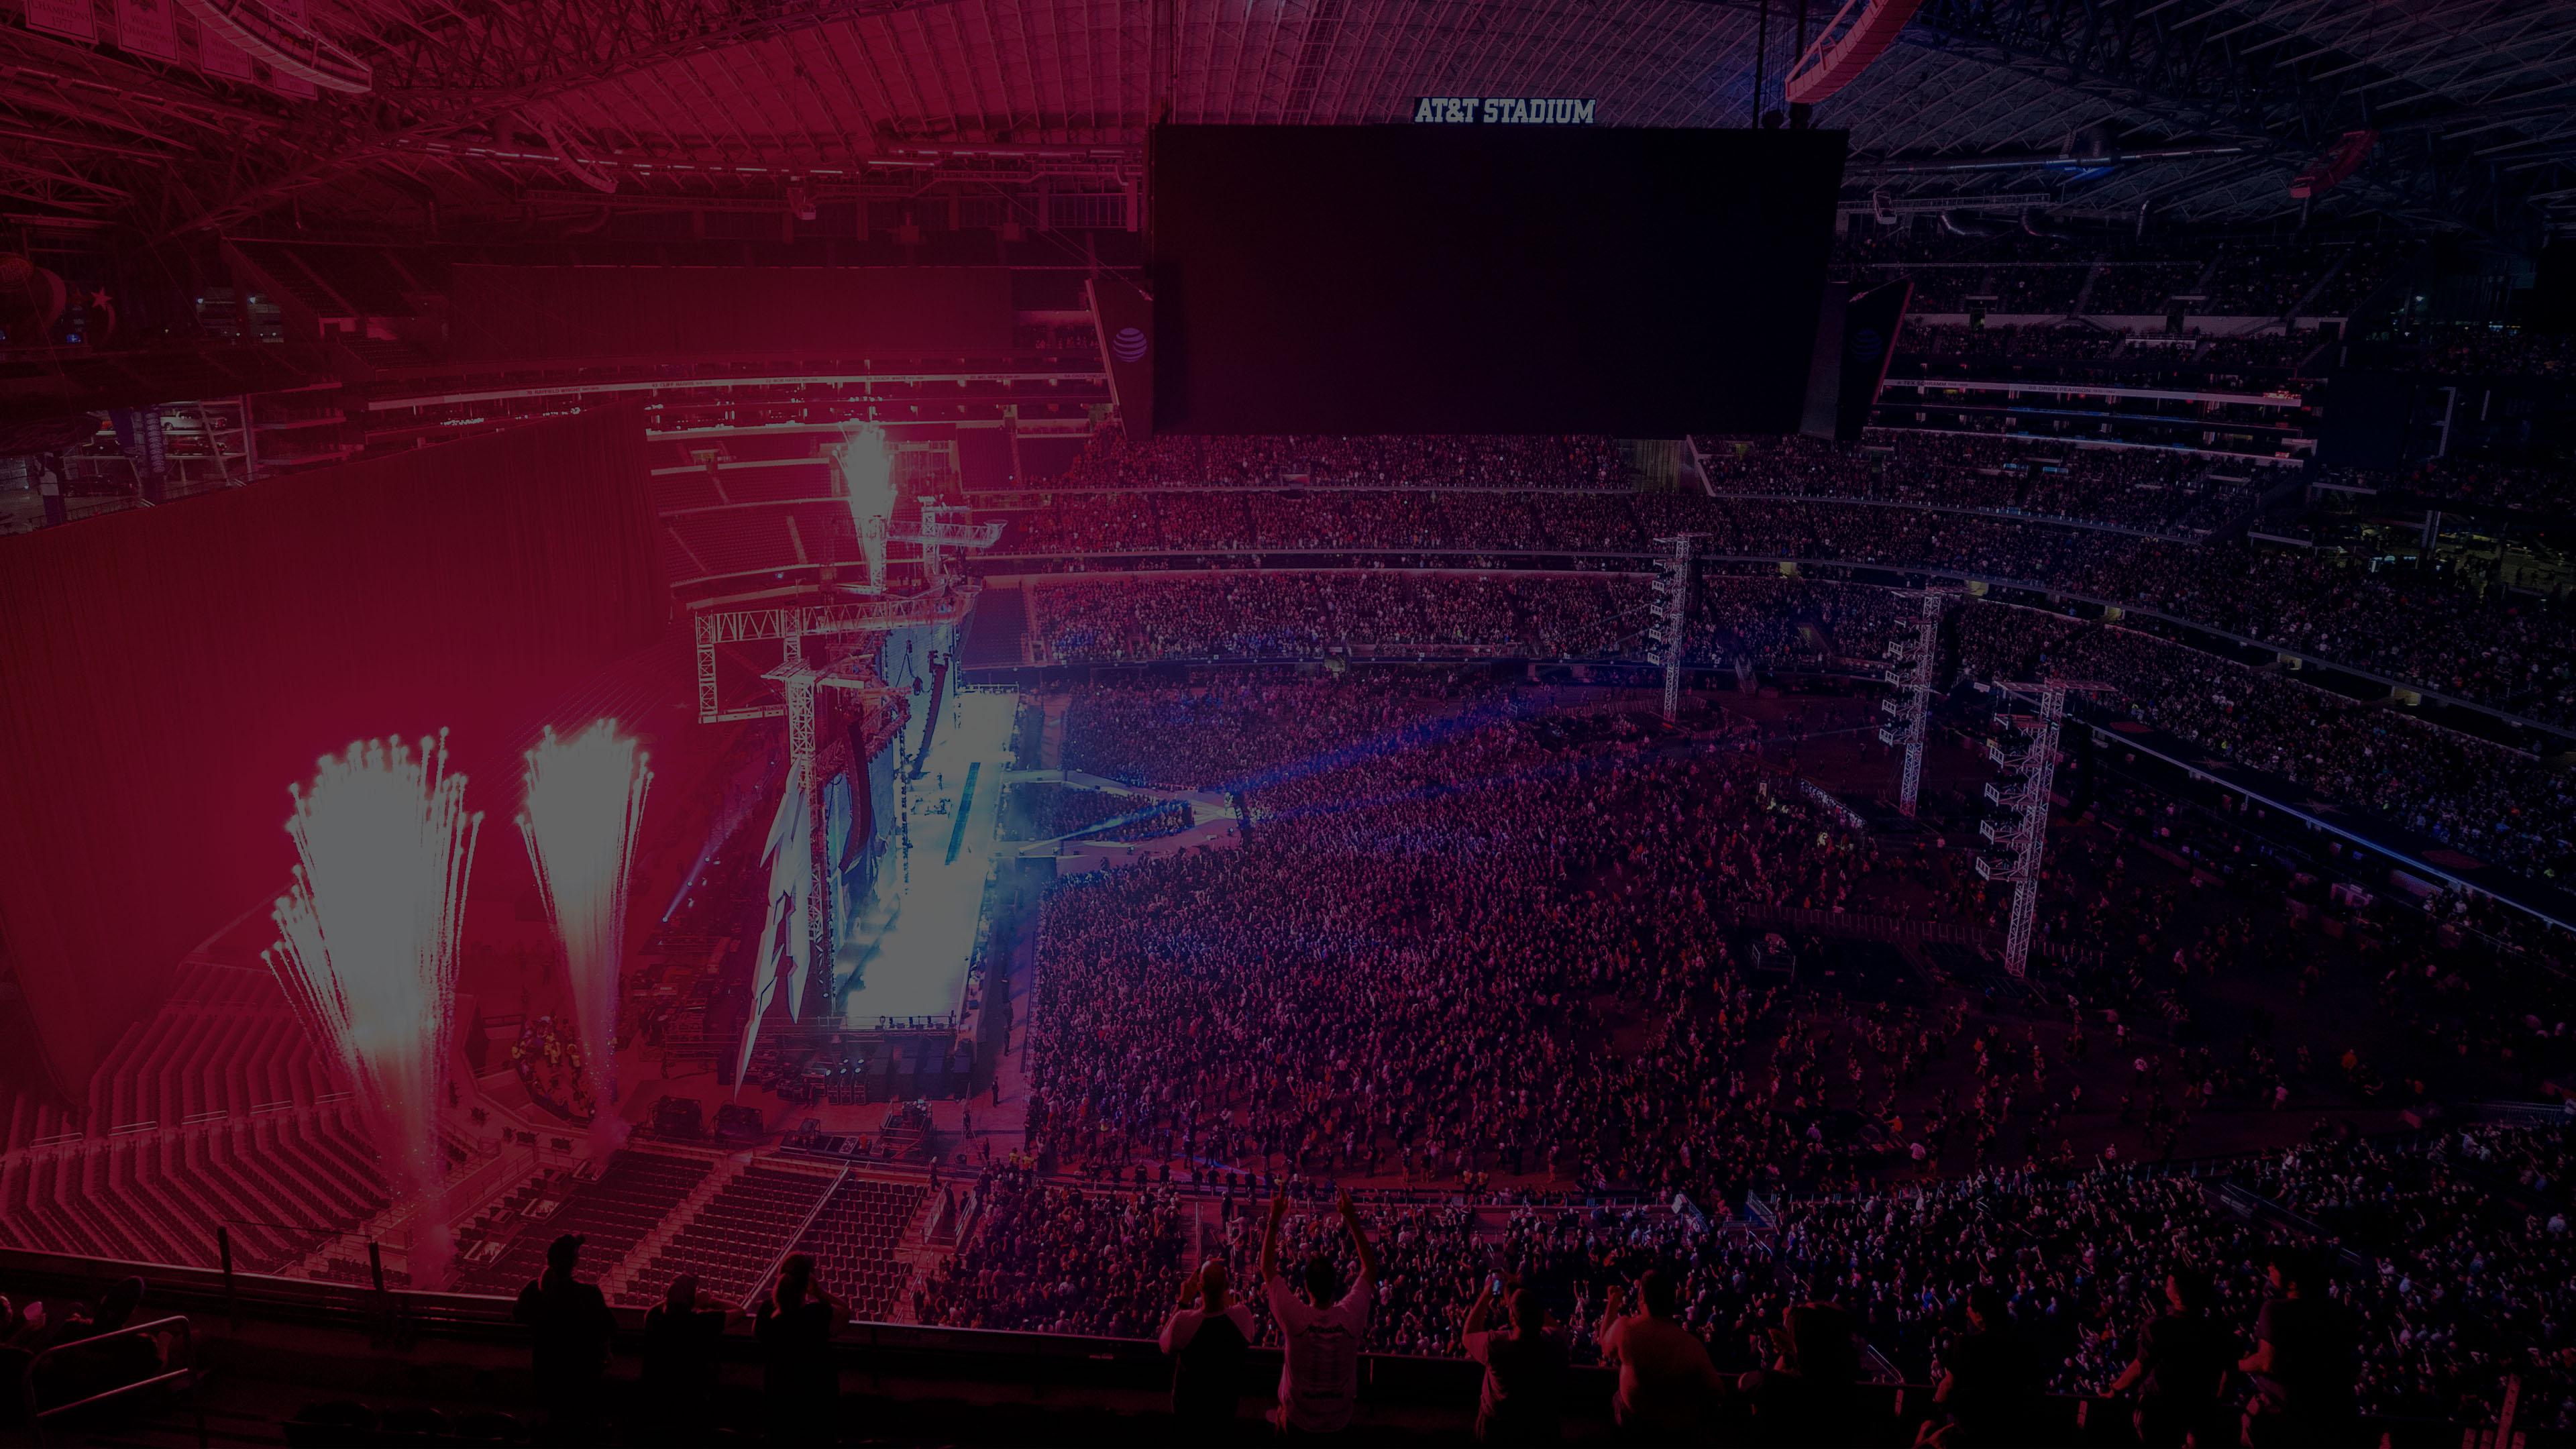 Metallica at AT&T Stadium in Dallas, TX on June 16, 2017